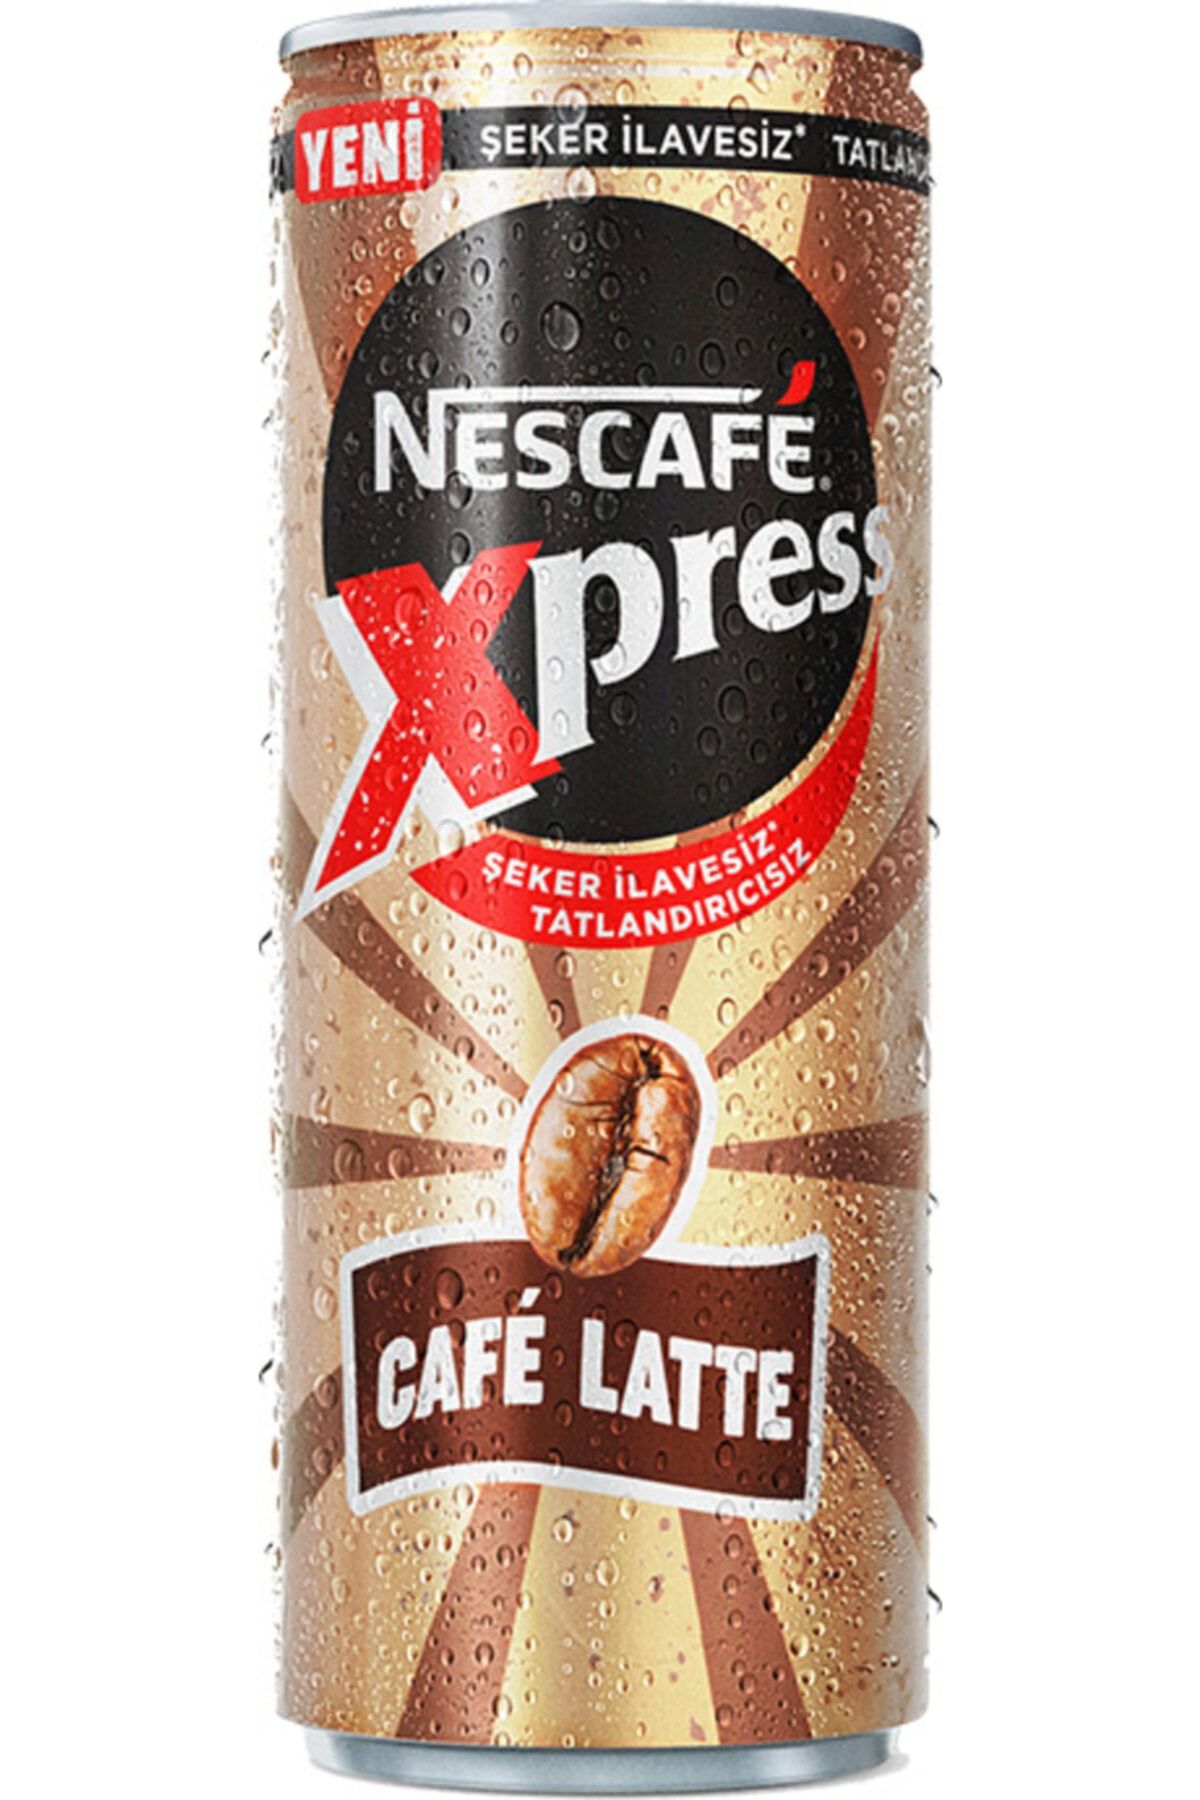 Nescafe Xpress Cafe Latte Şeker Ilavesiz 250 Ml - 24 Adet